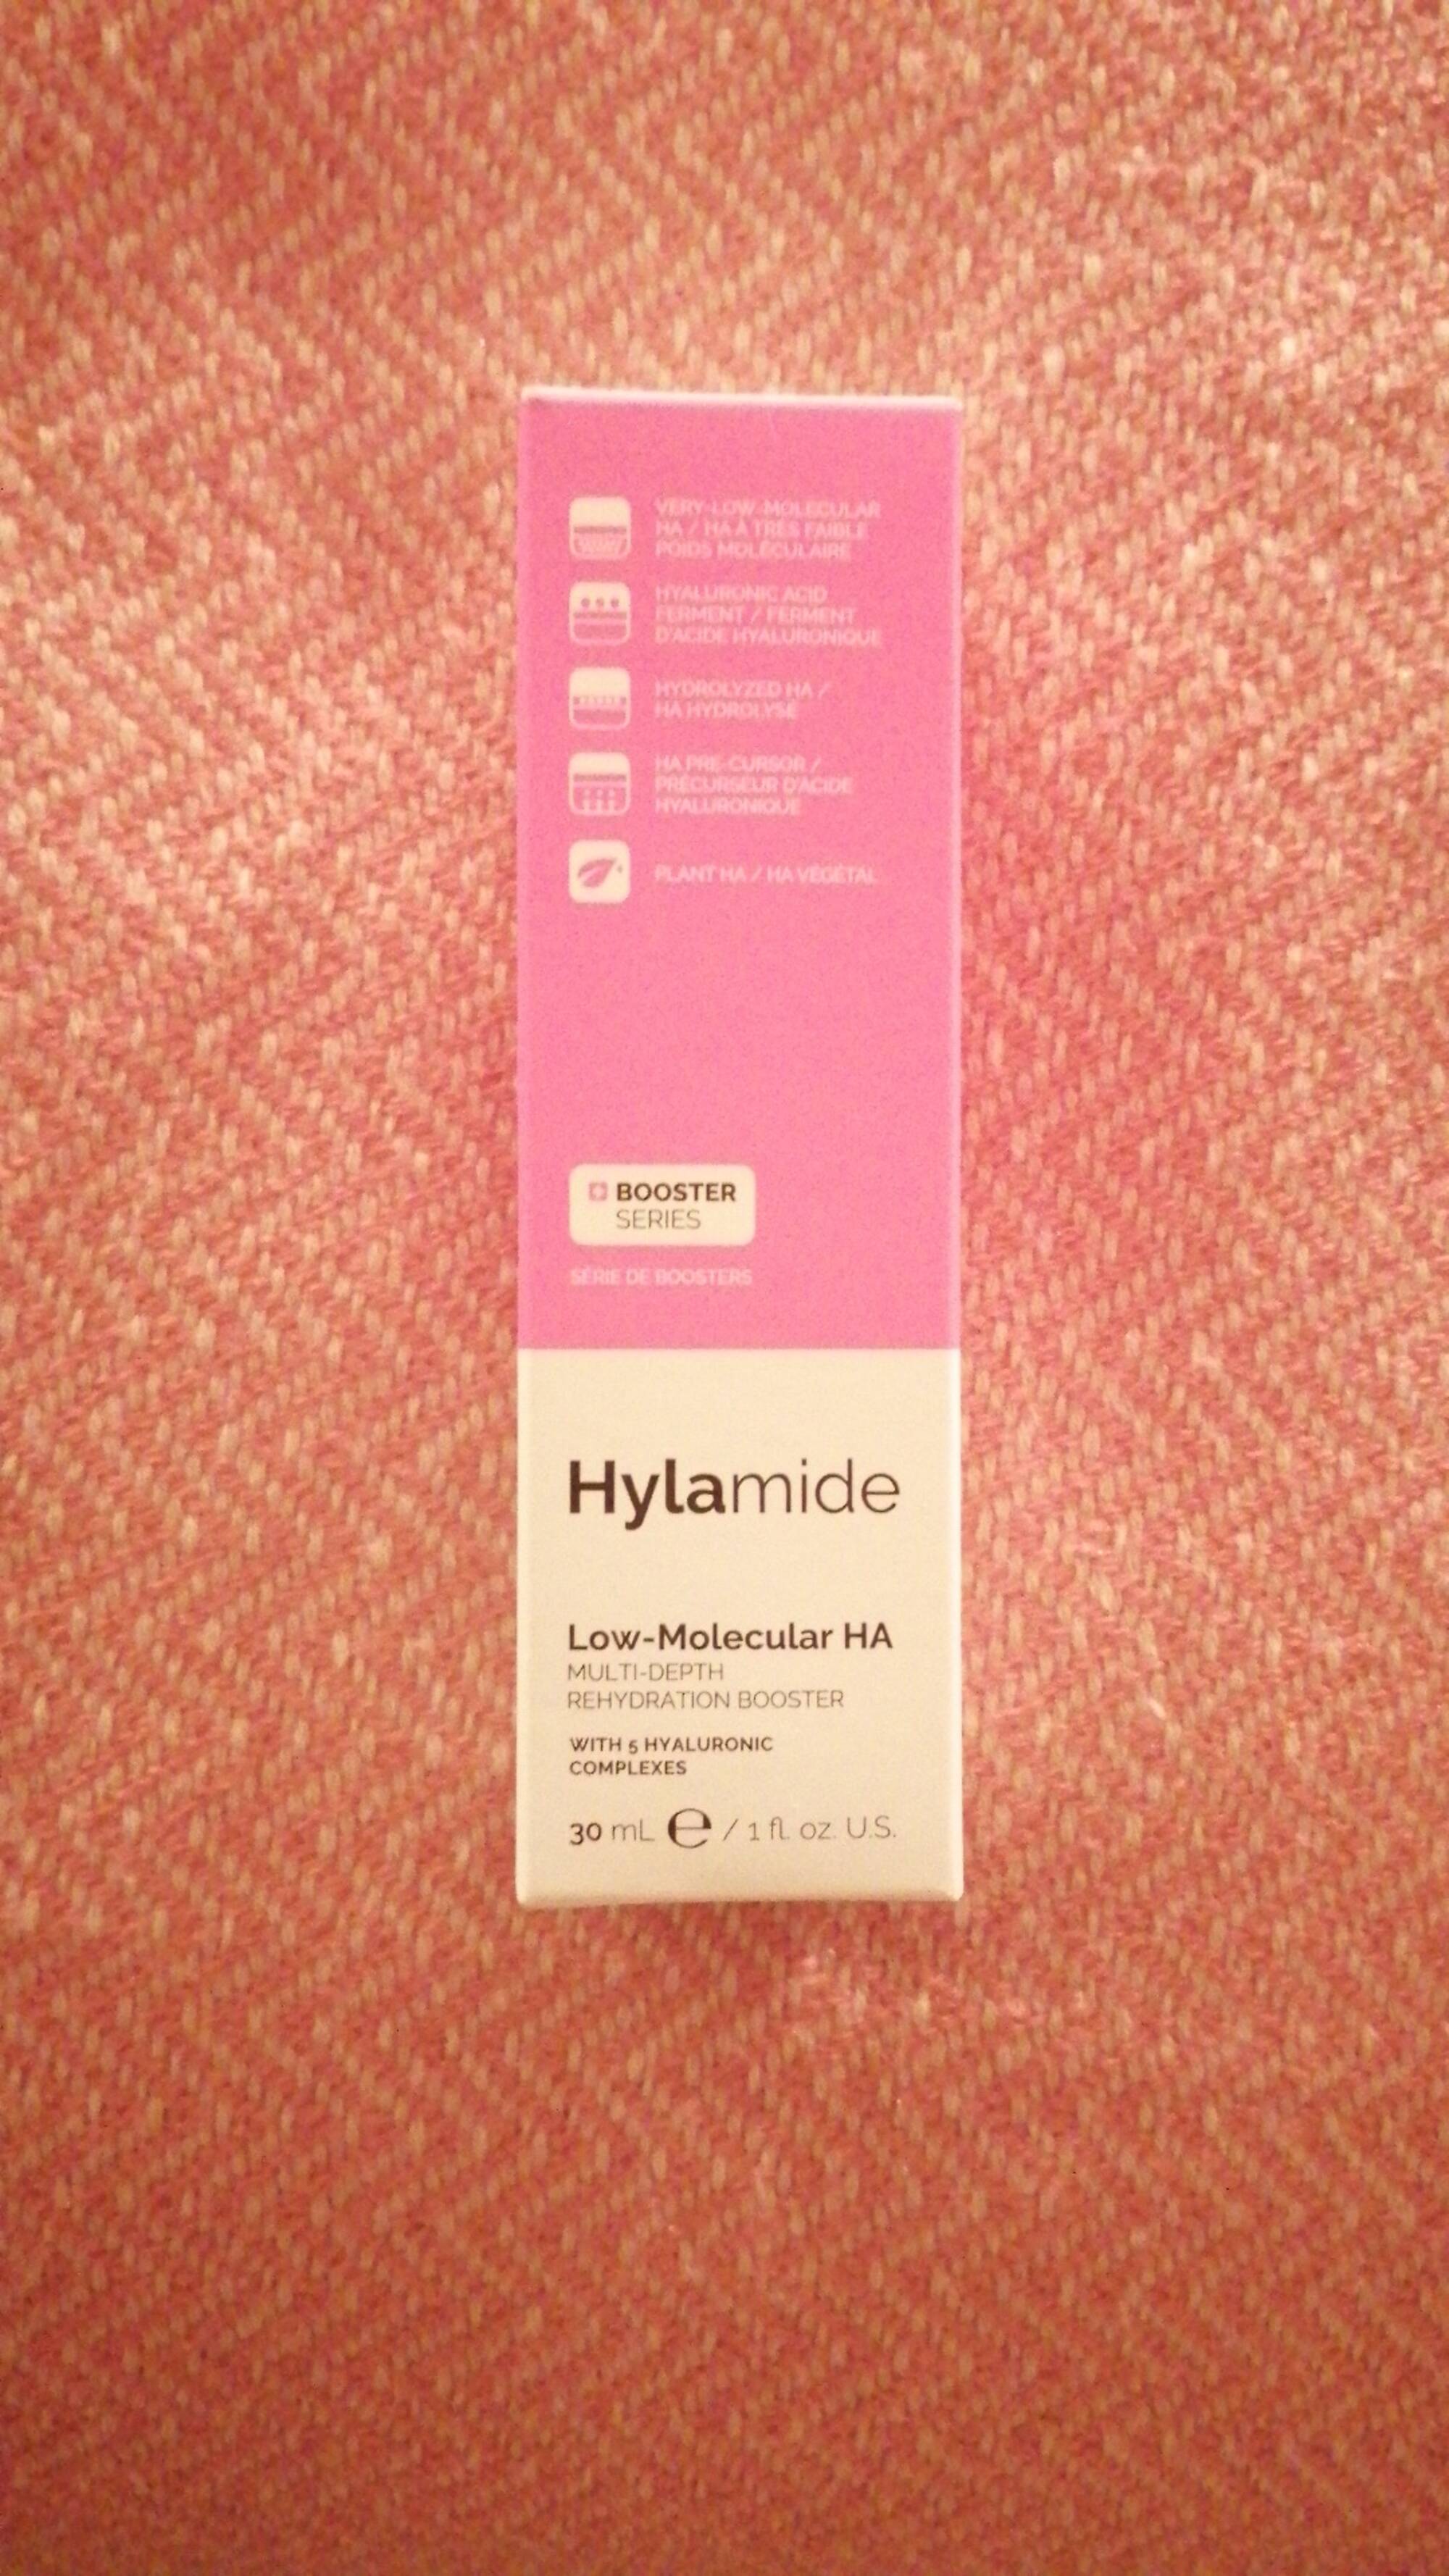 HYLAMIDE - Low-molecular ha - Rehydration booster